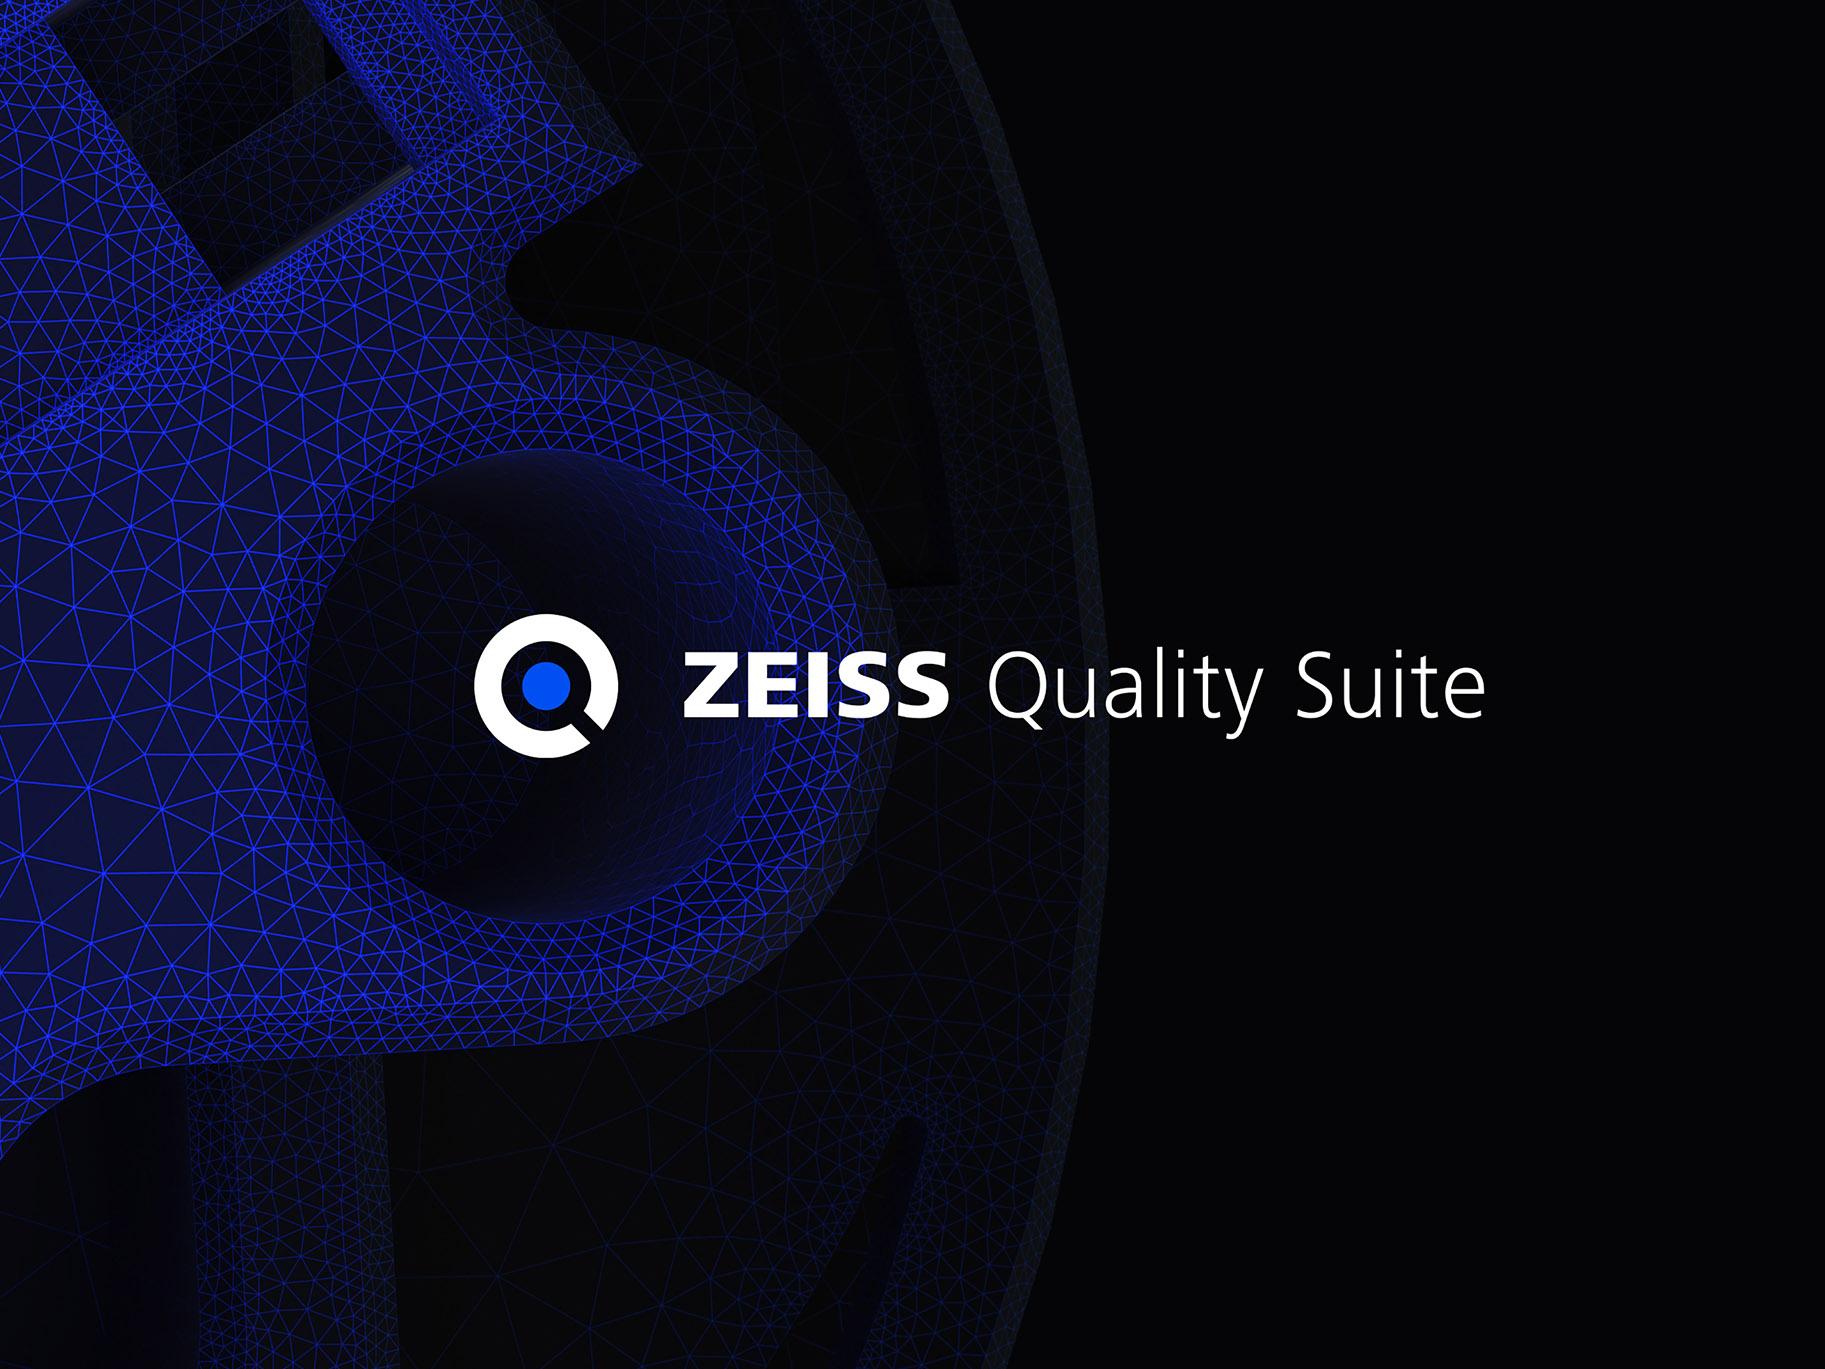 ZEISS Quality Suite für Software und digitale Services